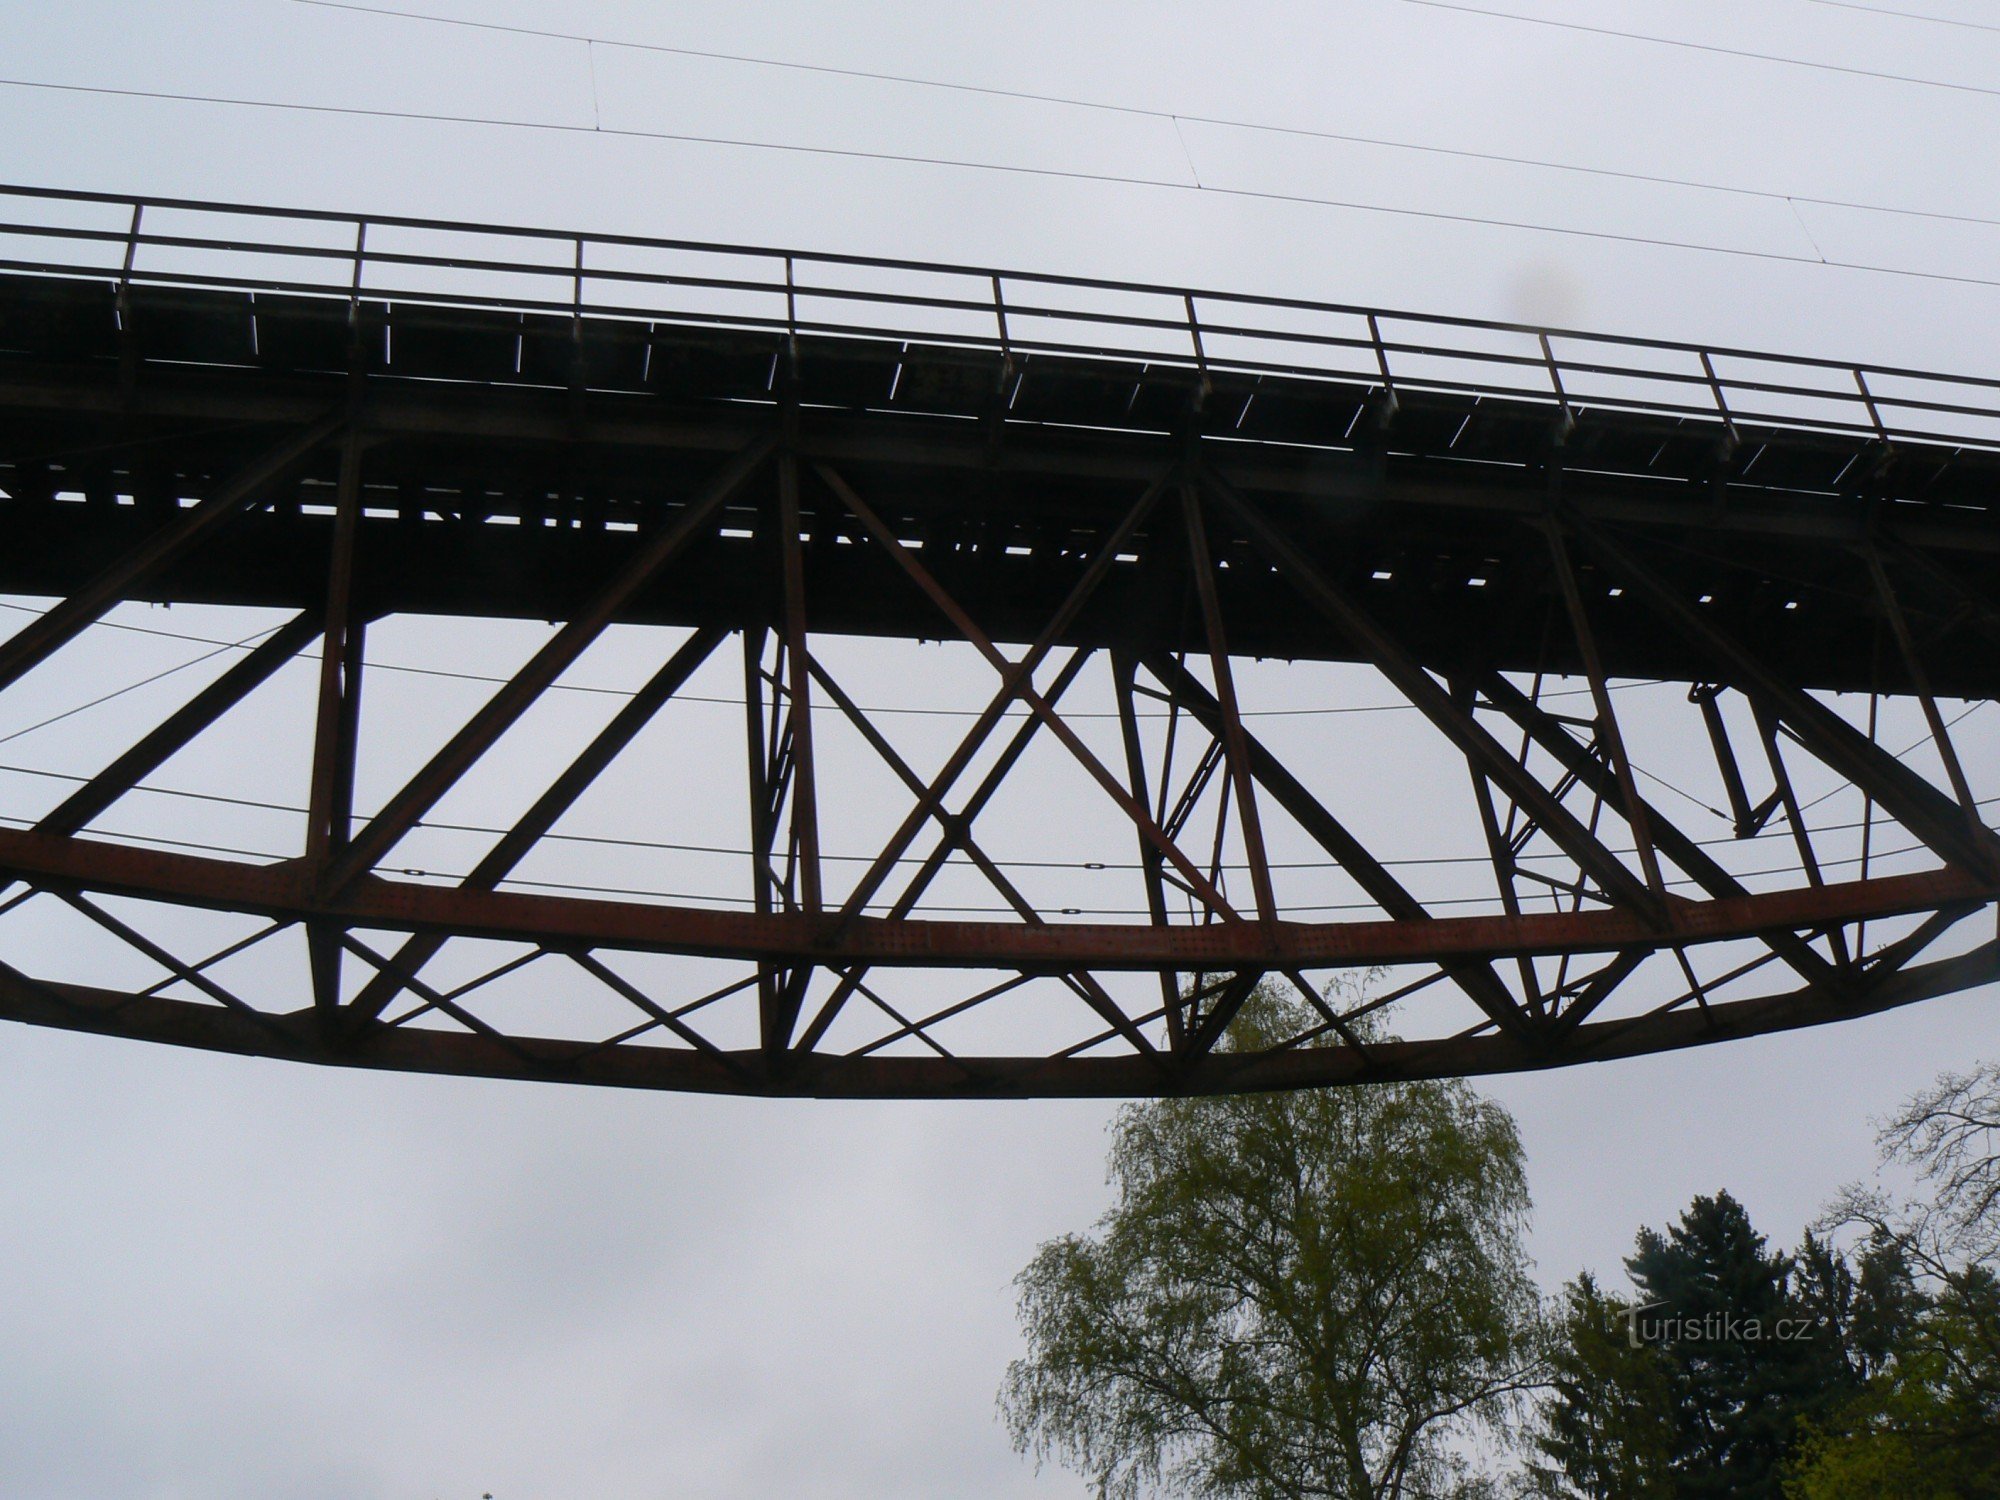 Конструкція мосту має напівпараболічну - спрямовану вниз - форму.